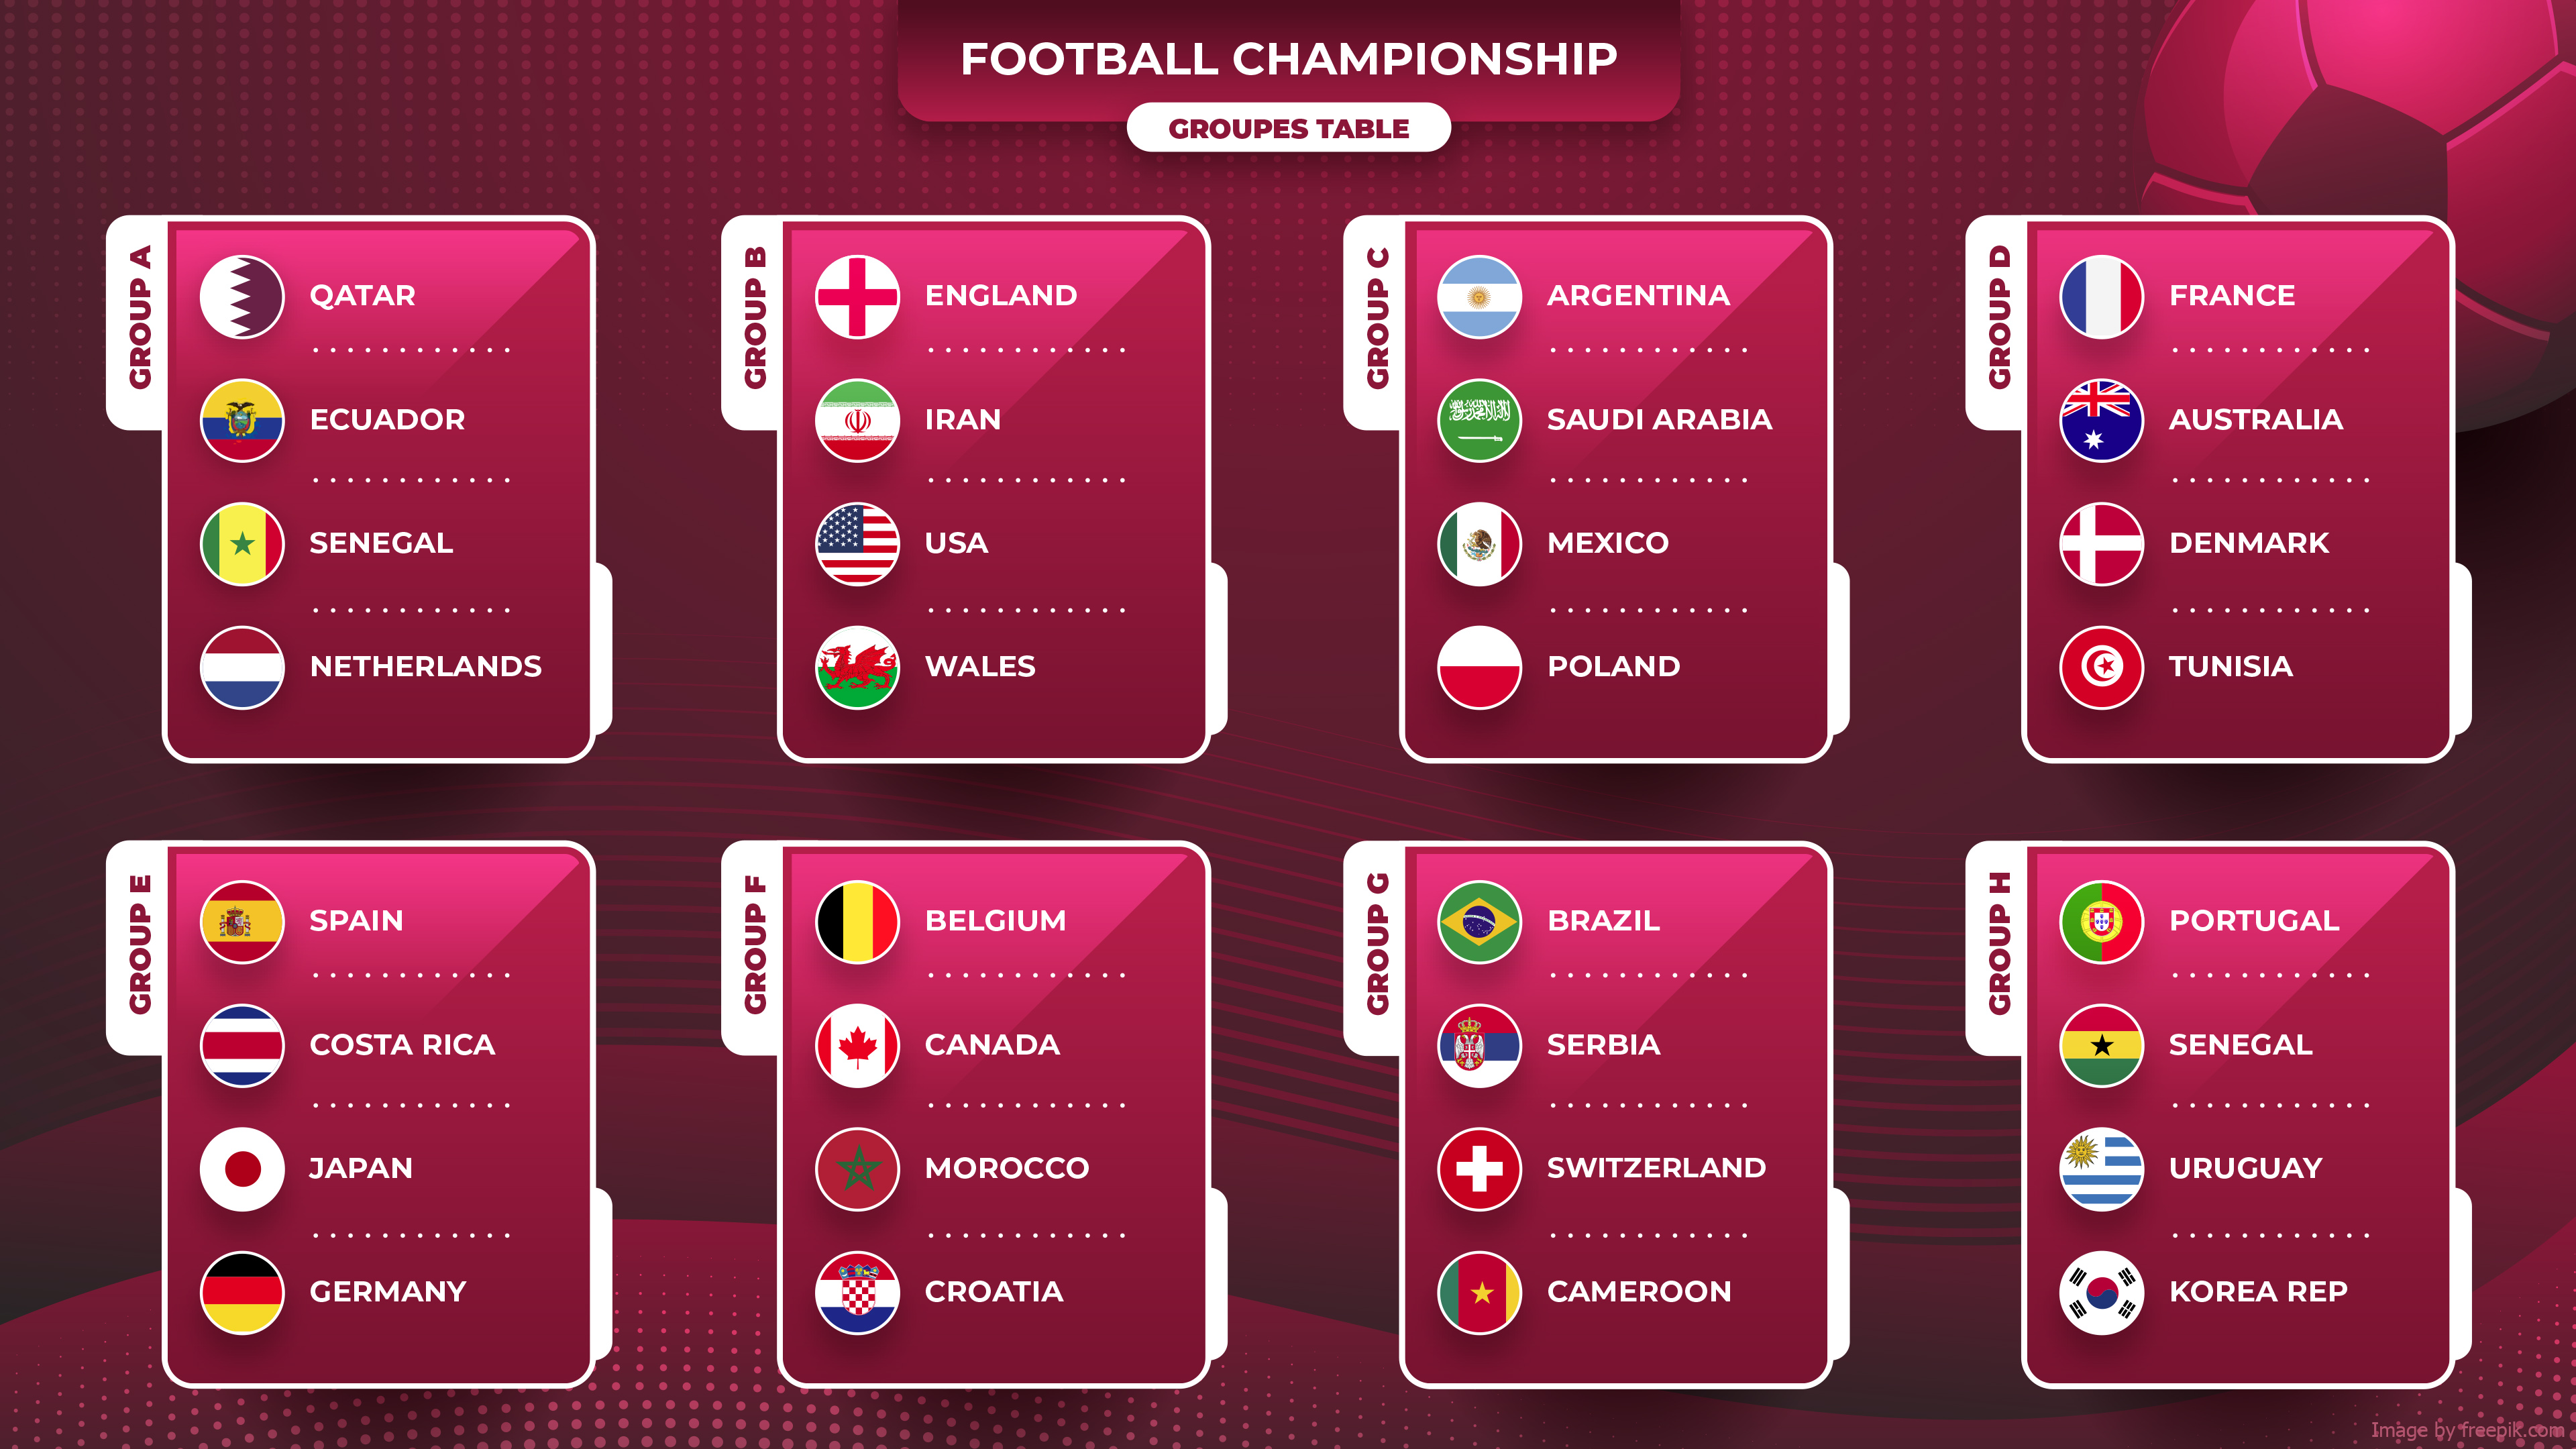 FIFA World Cup Qatar 2022 023 Mistrzostwa Swiata w Pilce Noznej Katar 2022, Grupy